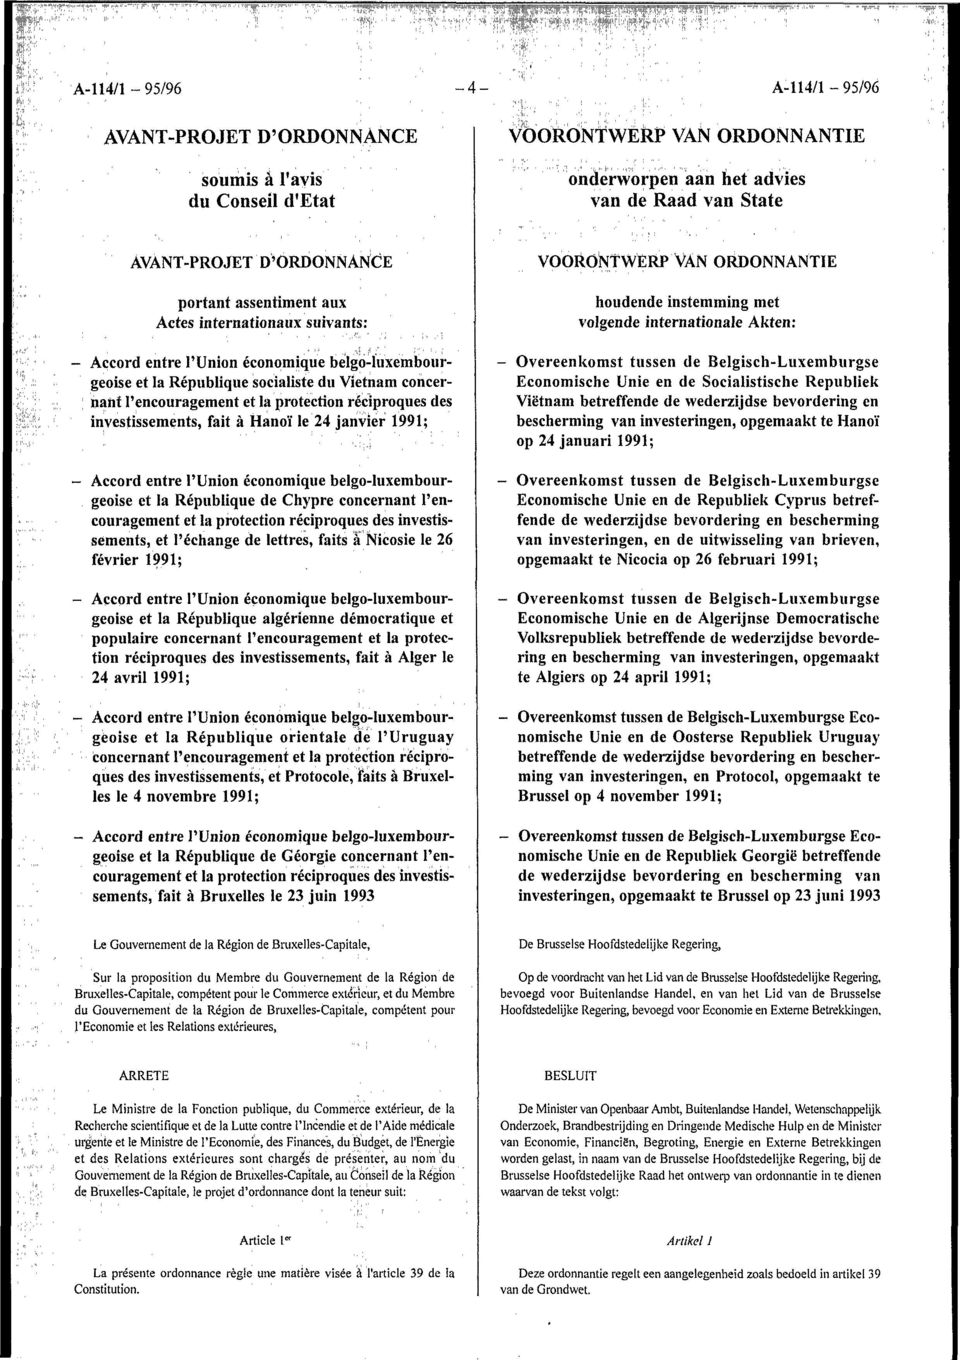 aux Actes internationaux suivants: Accord entre l'union économique belgo-ïuxemboiirgeoise investissements, fait à Hanoi' le 24 janvier - et l'échange de lettres, faits a Nicosie le 26 février -